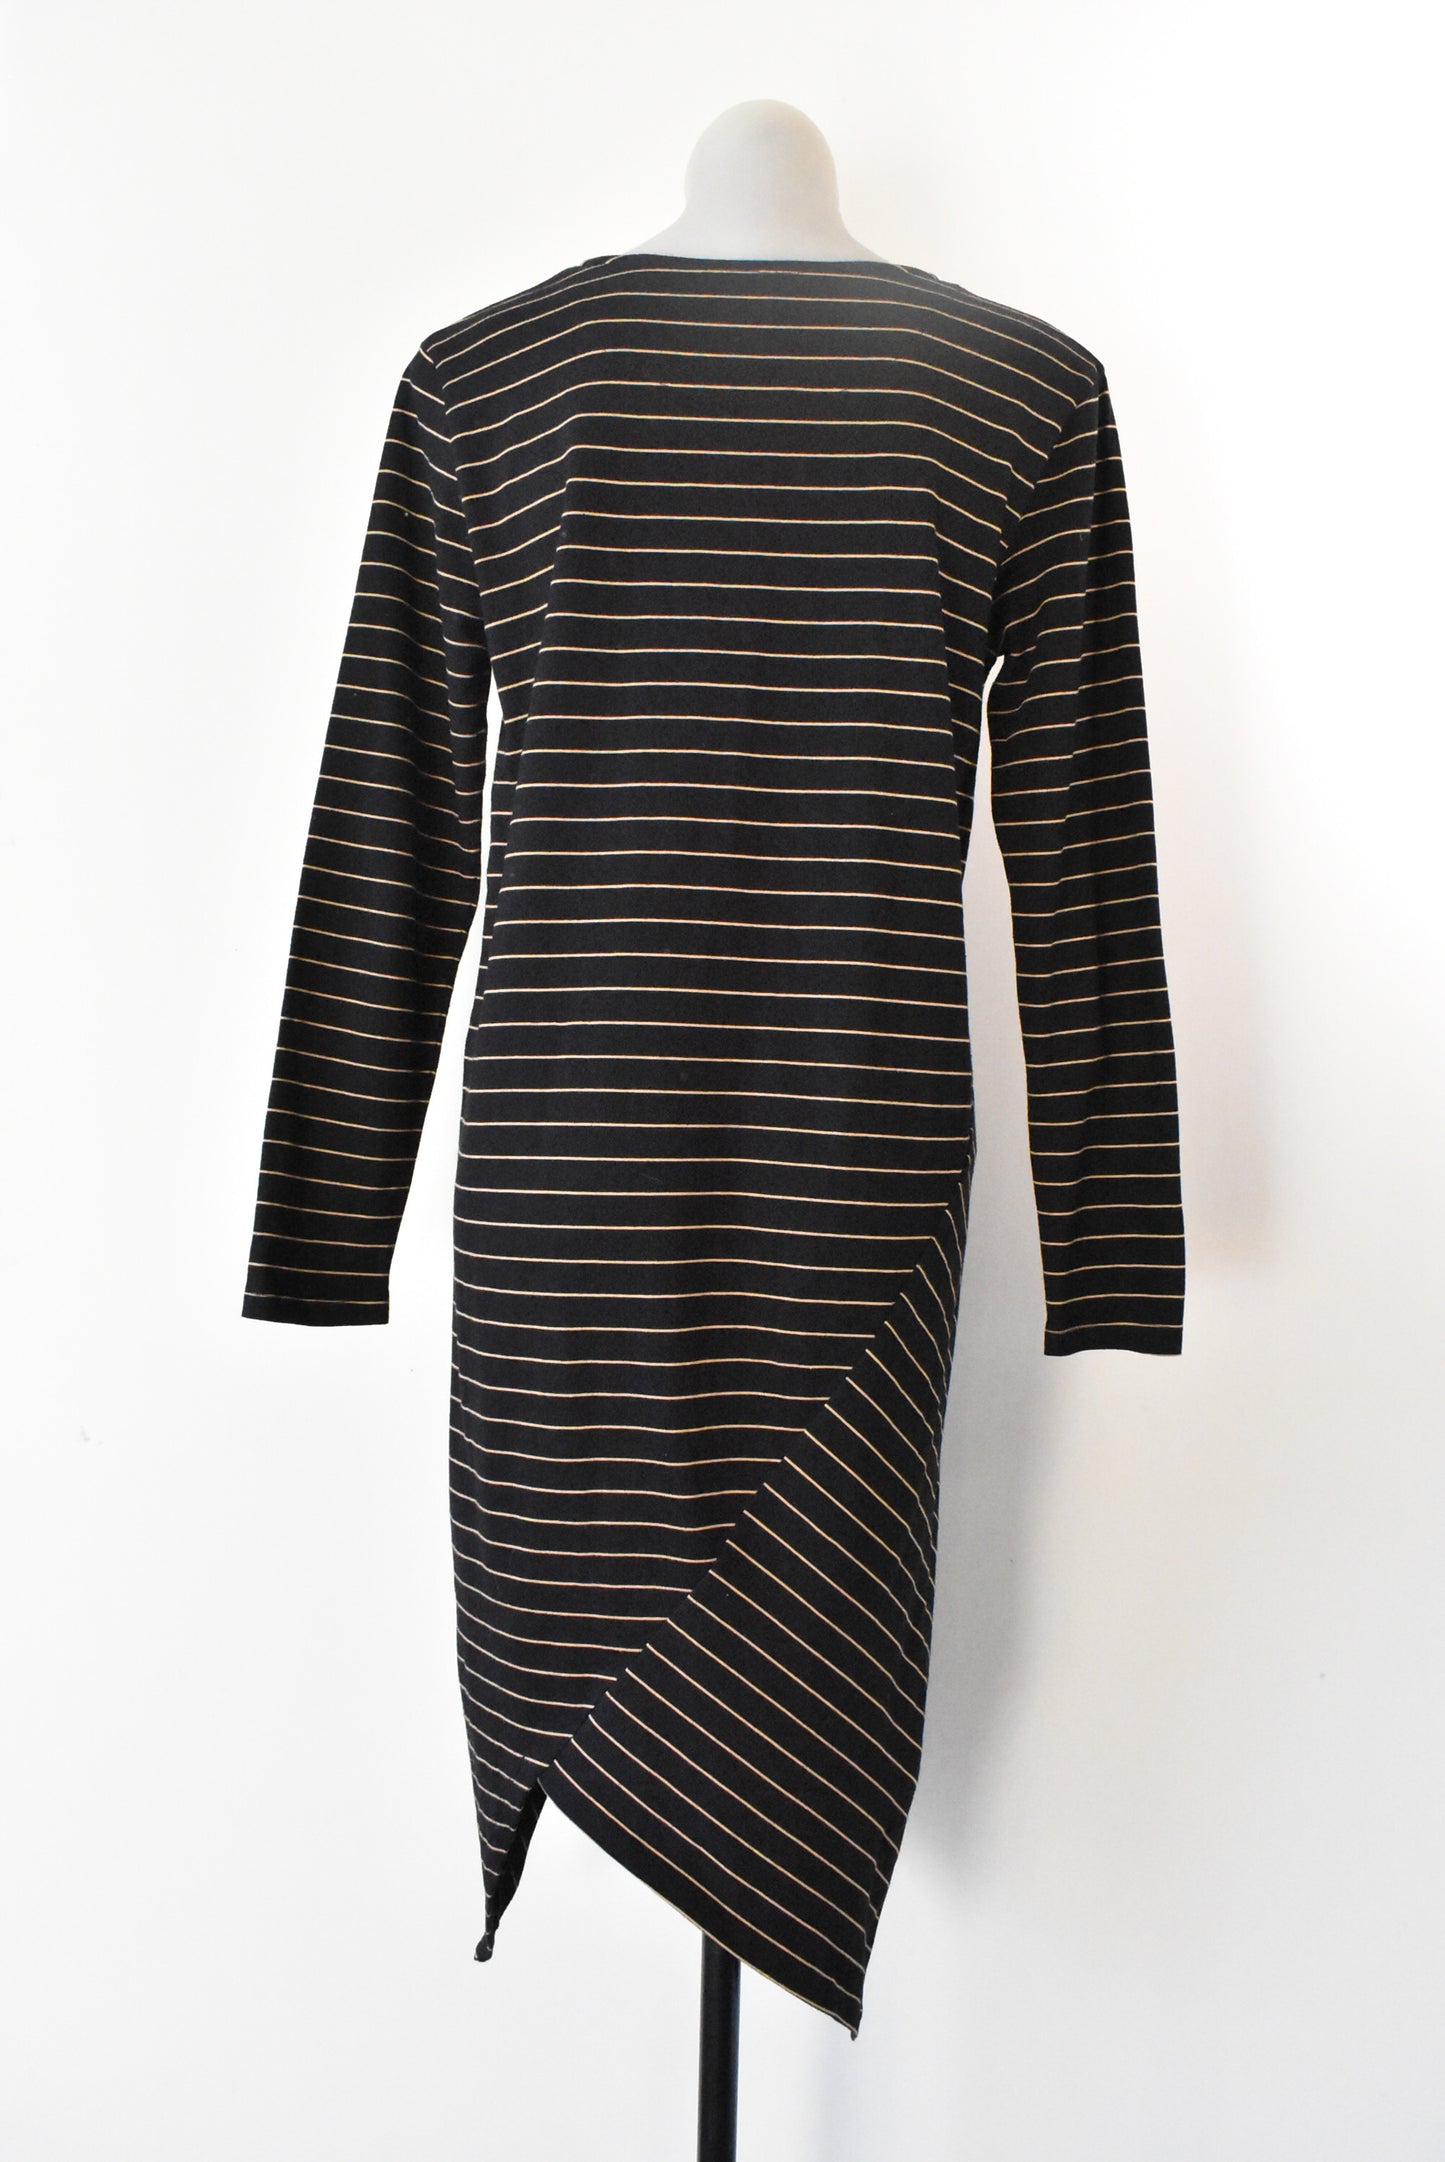 Moochi black & tan 100% cotton asymmetric dress, size S